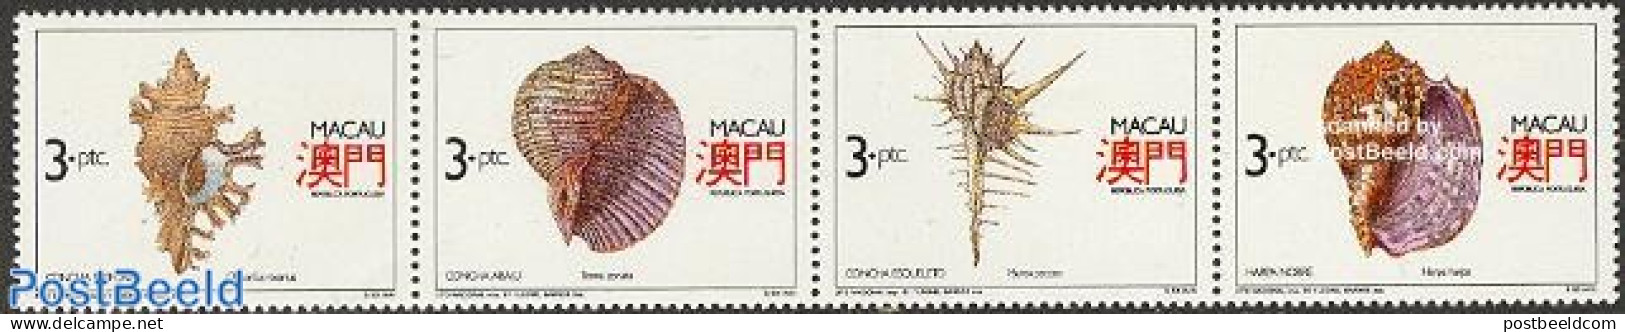 Macao 1991 Shells 4v [:::] Or [+], Mint NH, Nature - Shells & Crustaceans - Nuevos